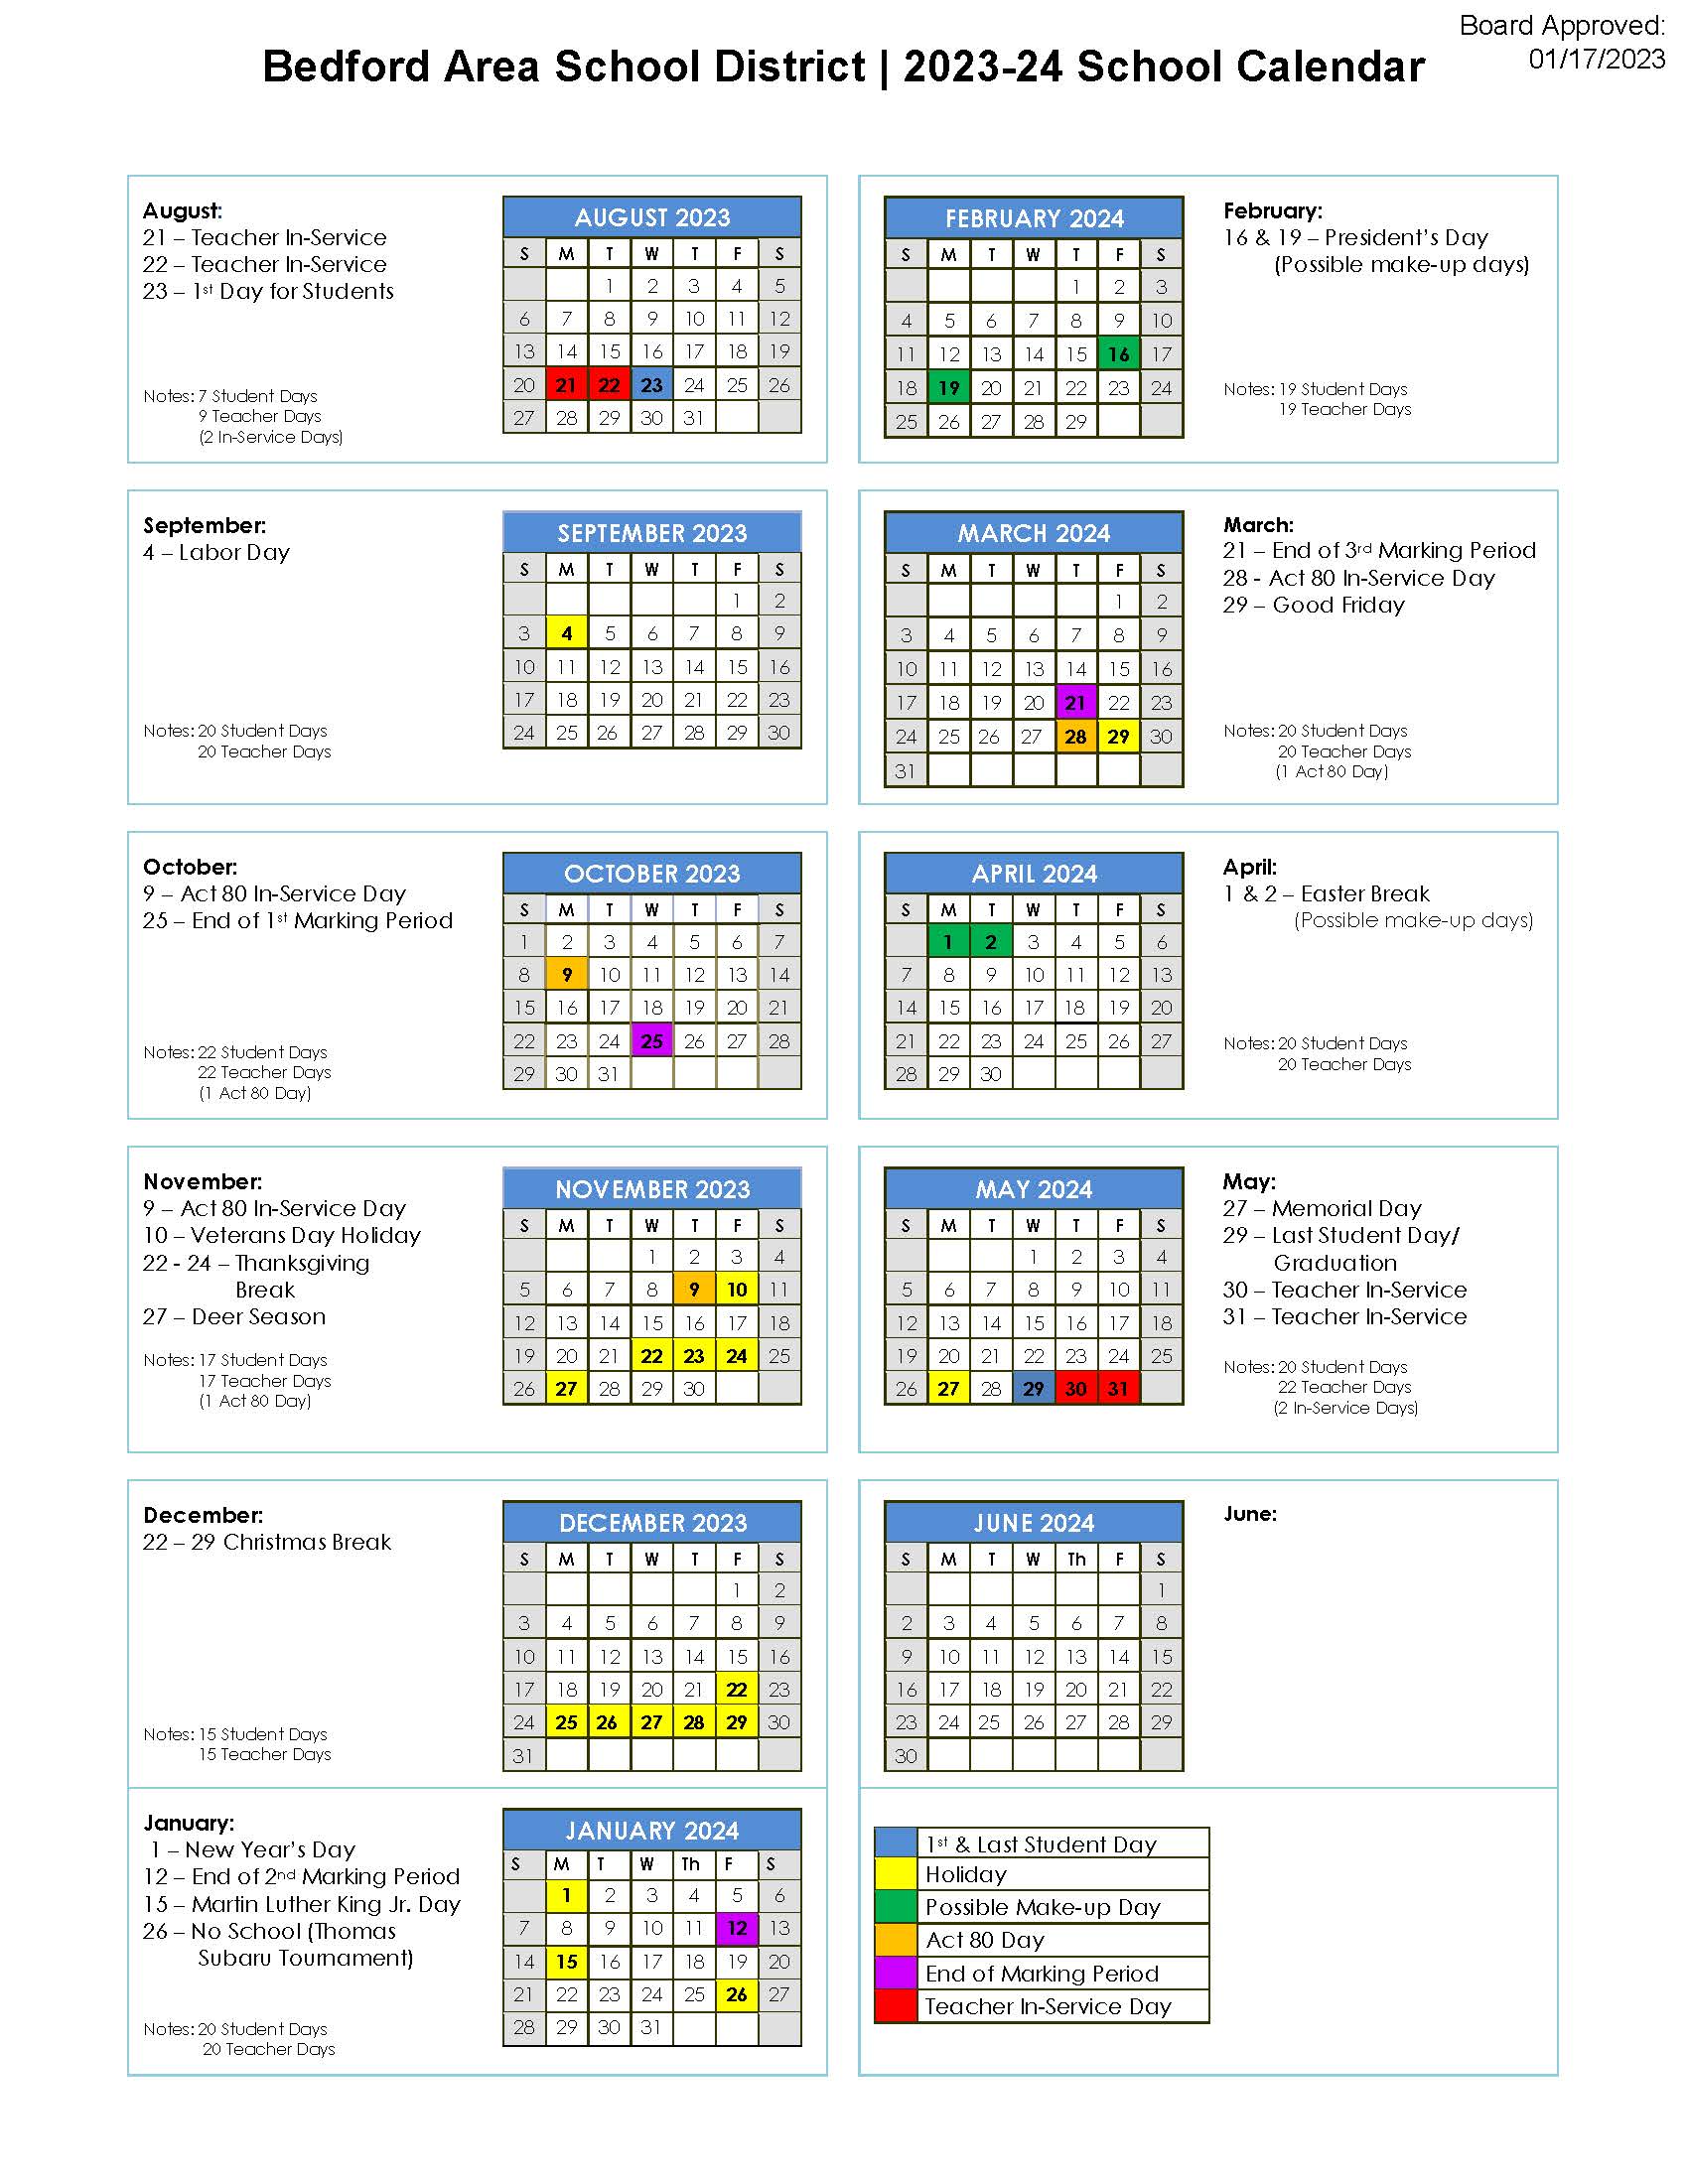 School District 2023-24 Calendar image file